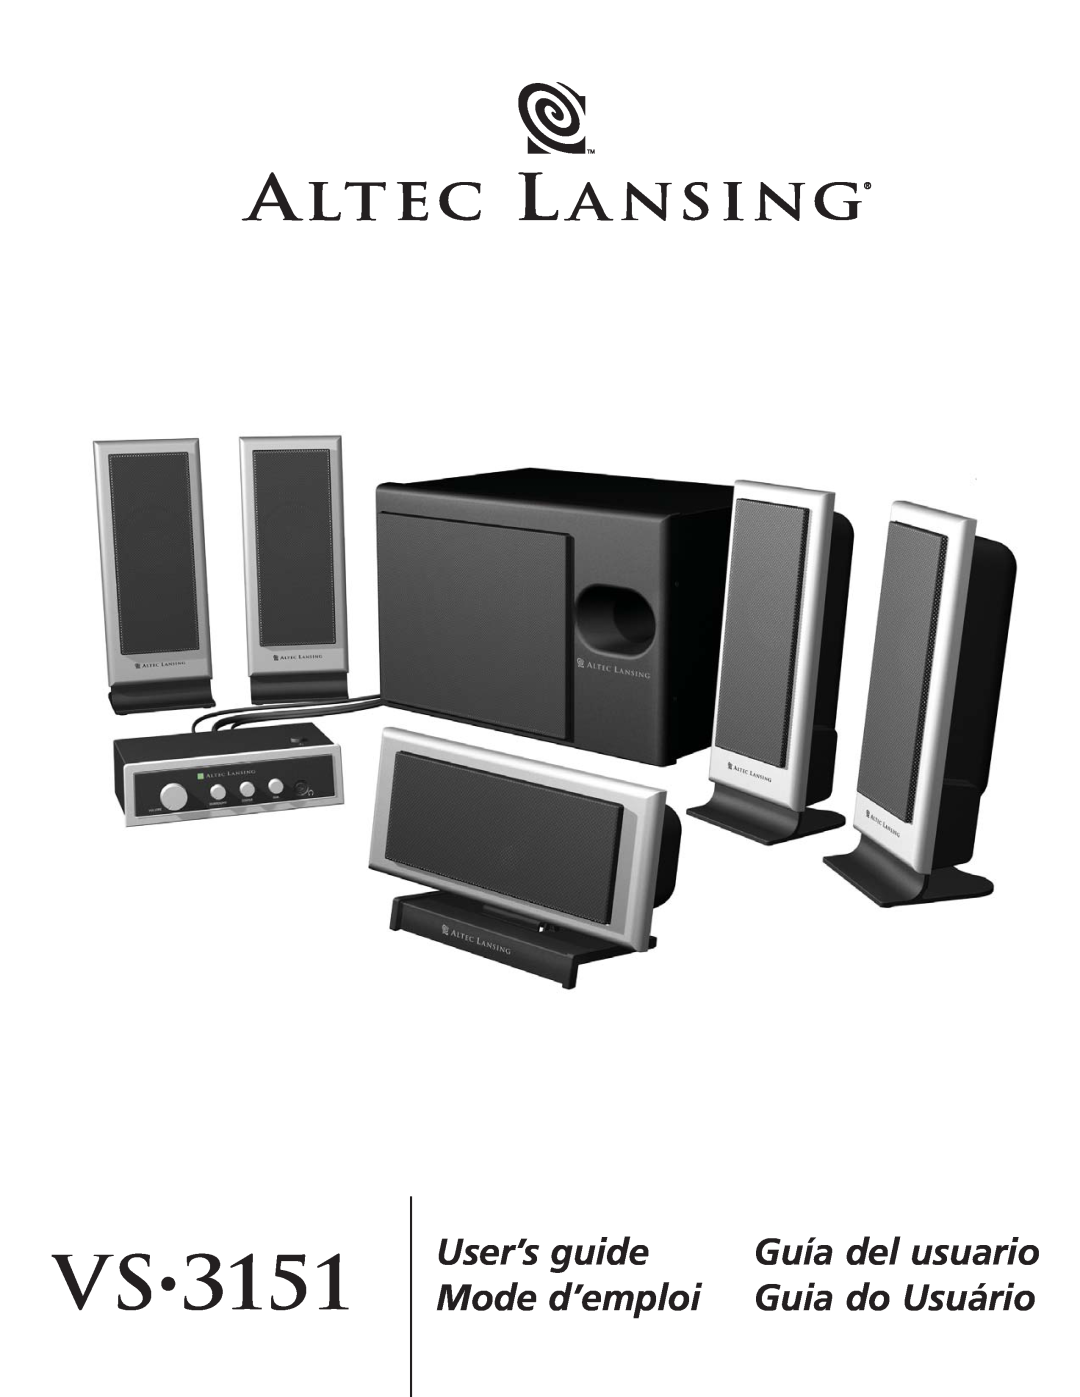 Altec Lansing VS3151 manual Vs, User’s guide, Mode d’emploi, Guía del usuario, Guia do Usuário 